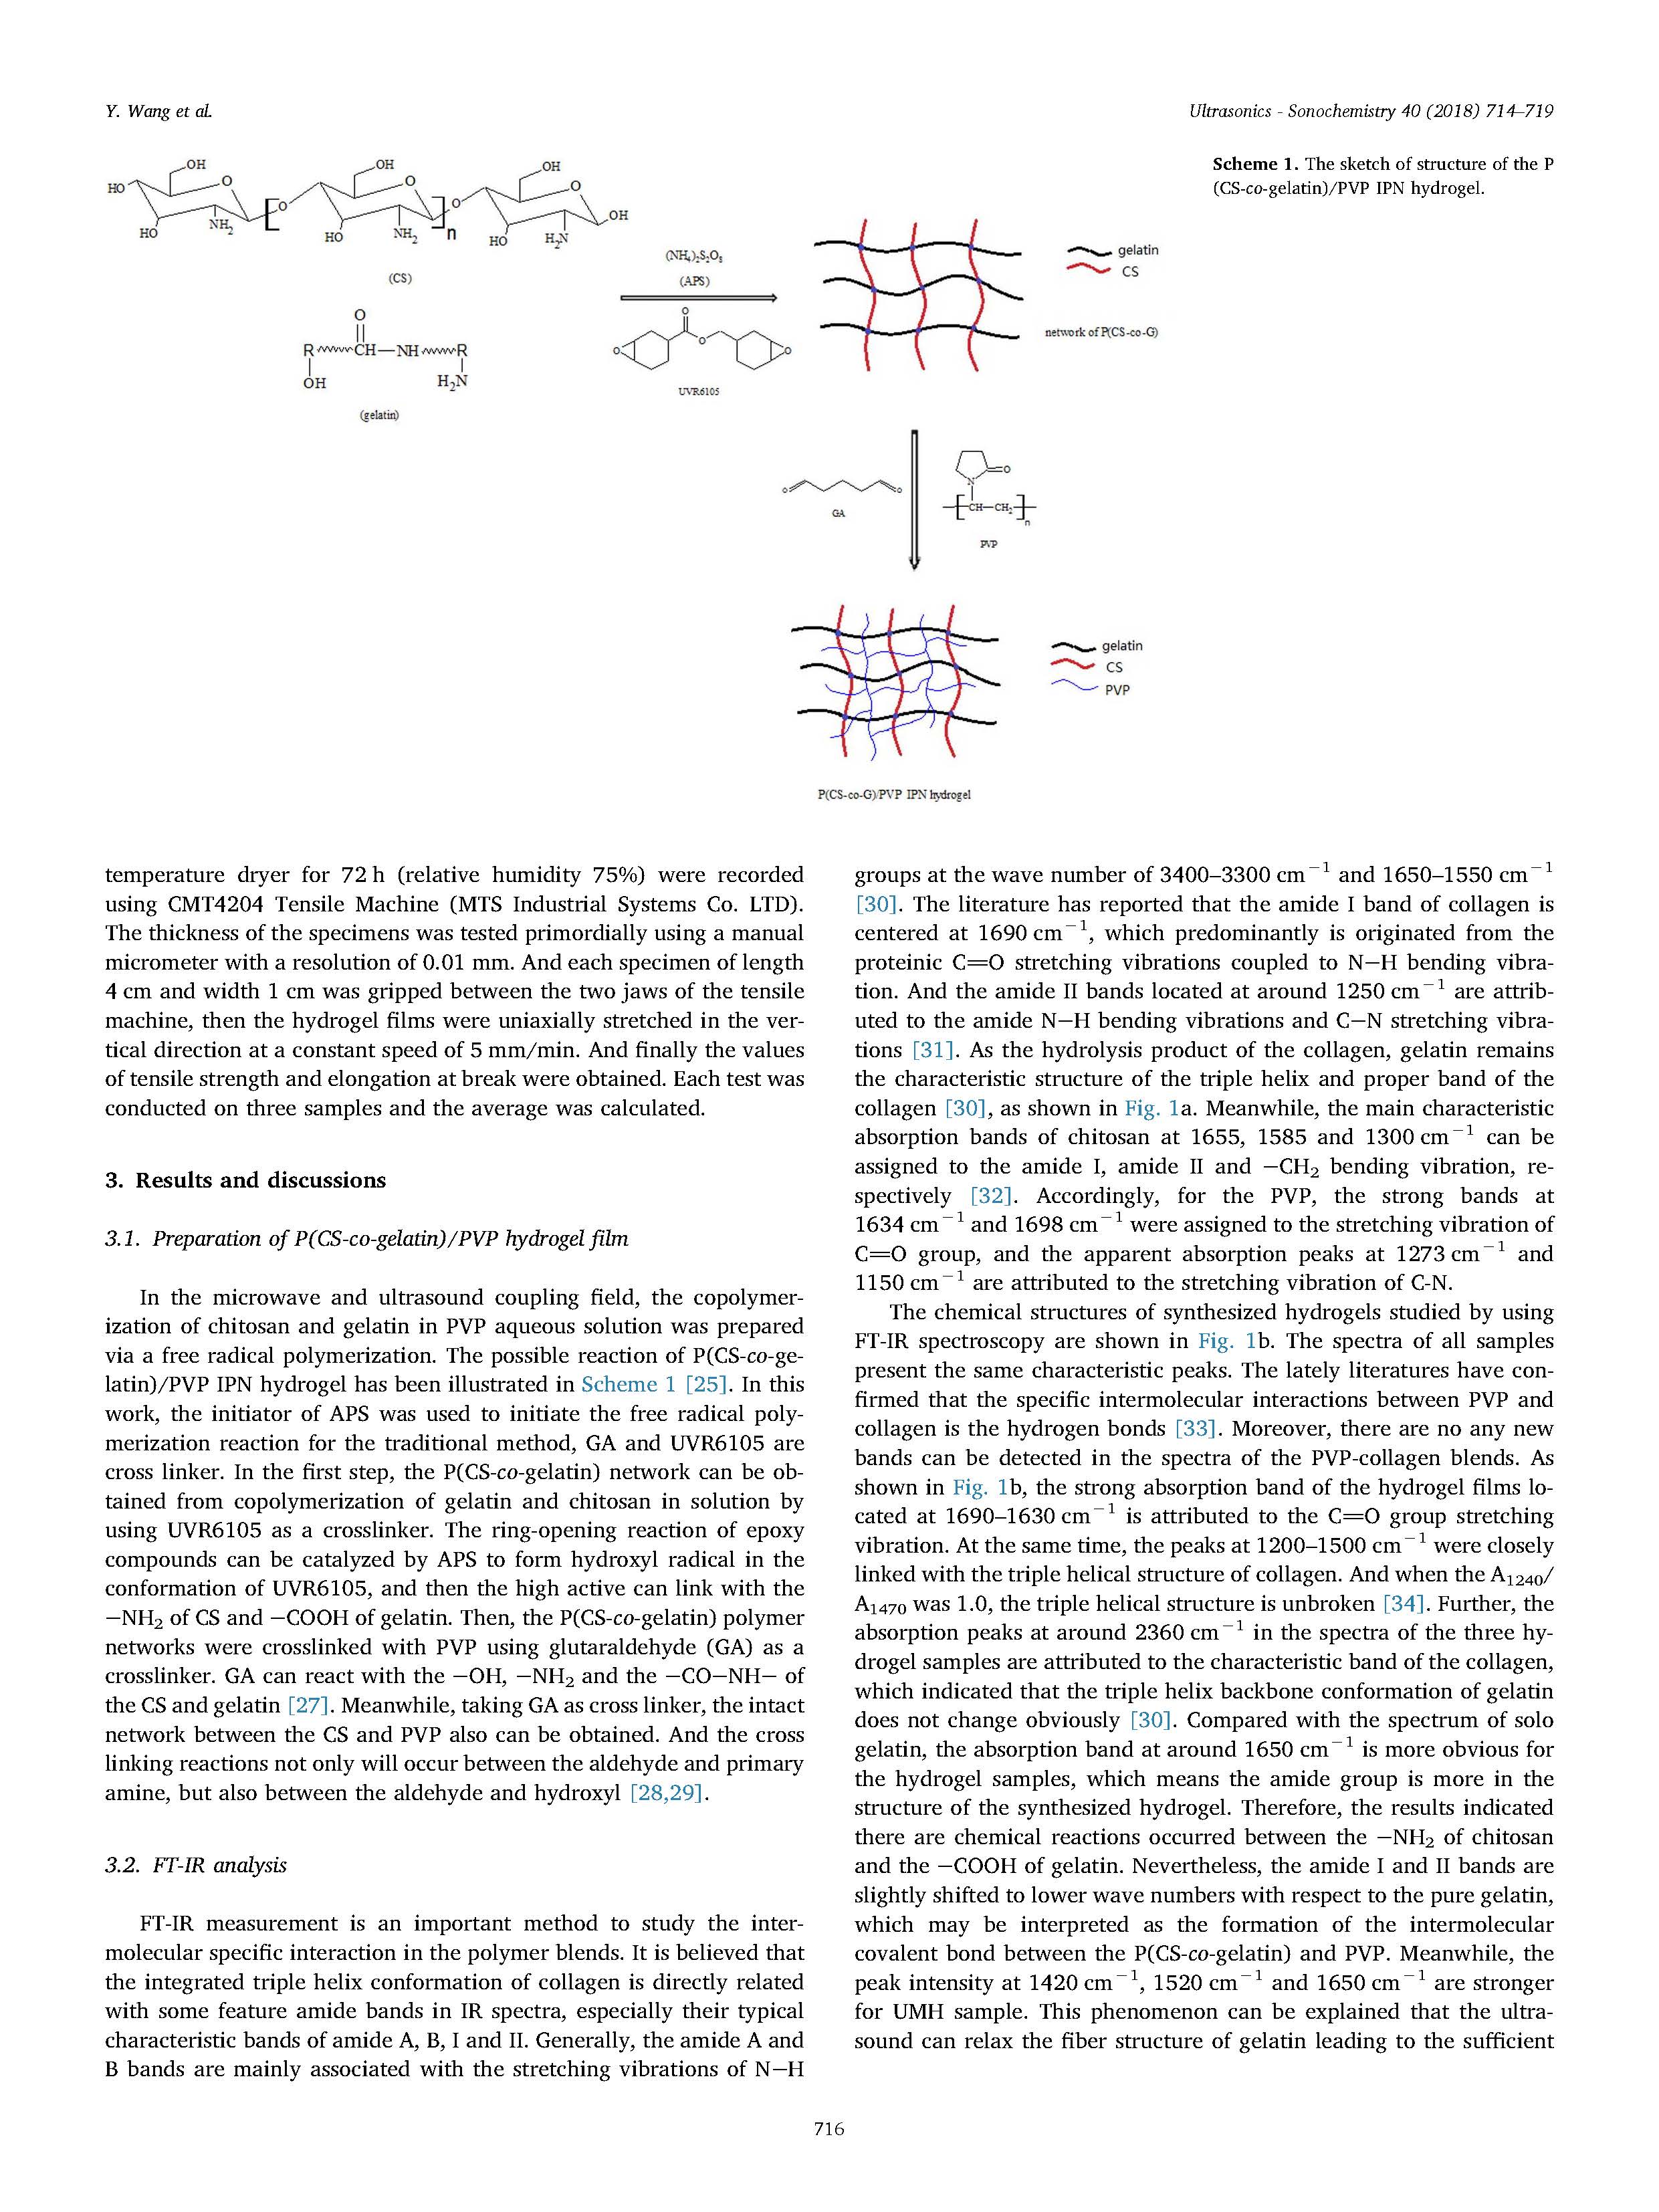 超声辅助微波合成聚（壳聚糖 - 共 - 明胶）/聚乙烯吡咯烷酮IPN水凝胶